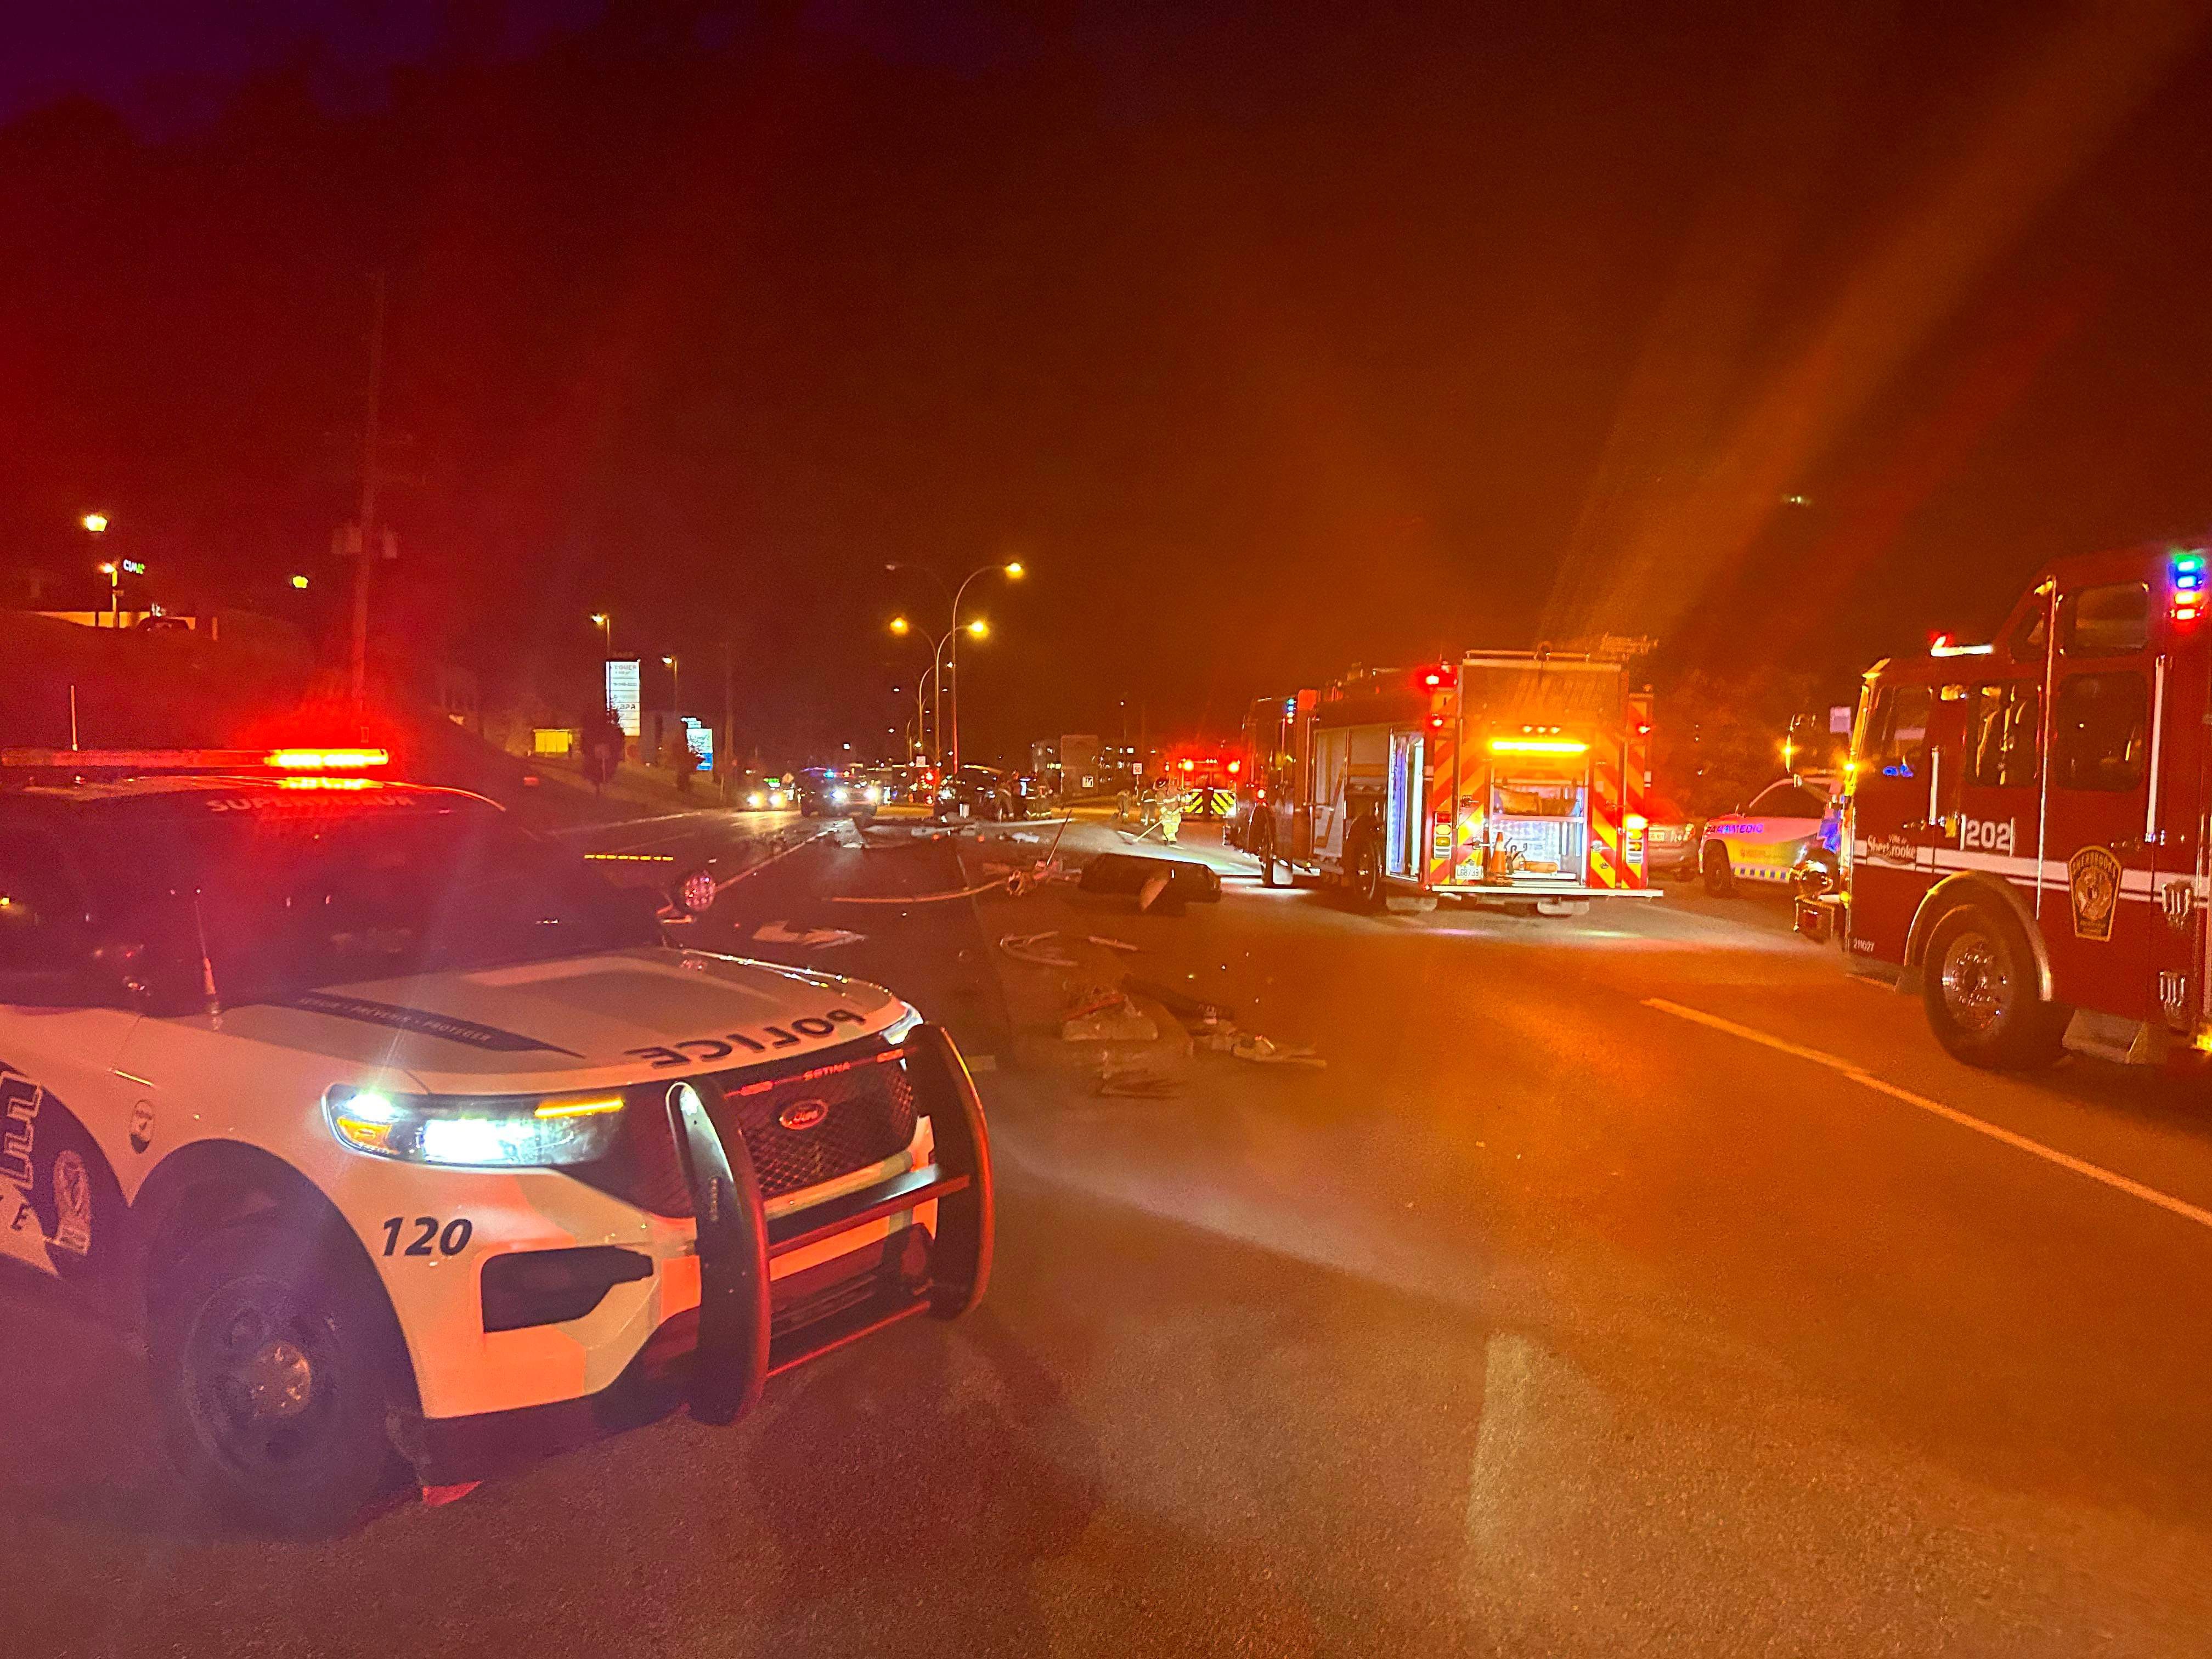 Les services d'urgence ont été demandés à l'intersection des rues King Ouest et J-A Bombardier, dans la nuit de samedi à dimanche, pour un accident impliquant un véhicule.